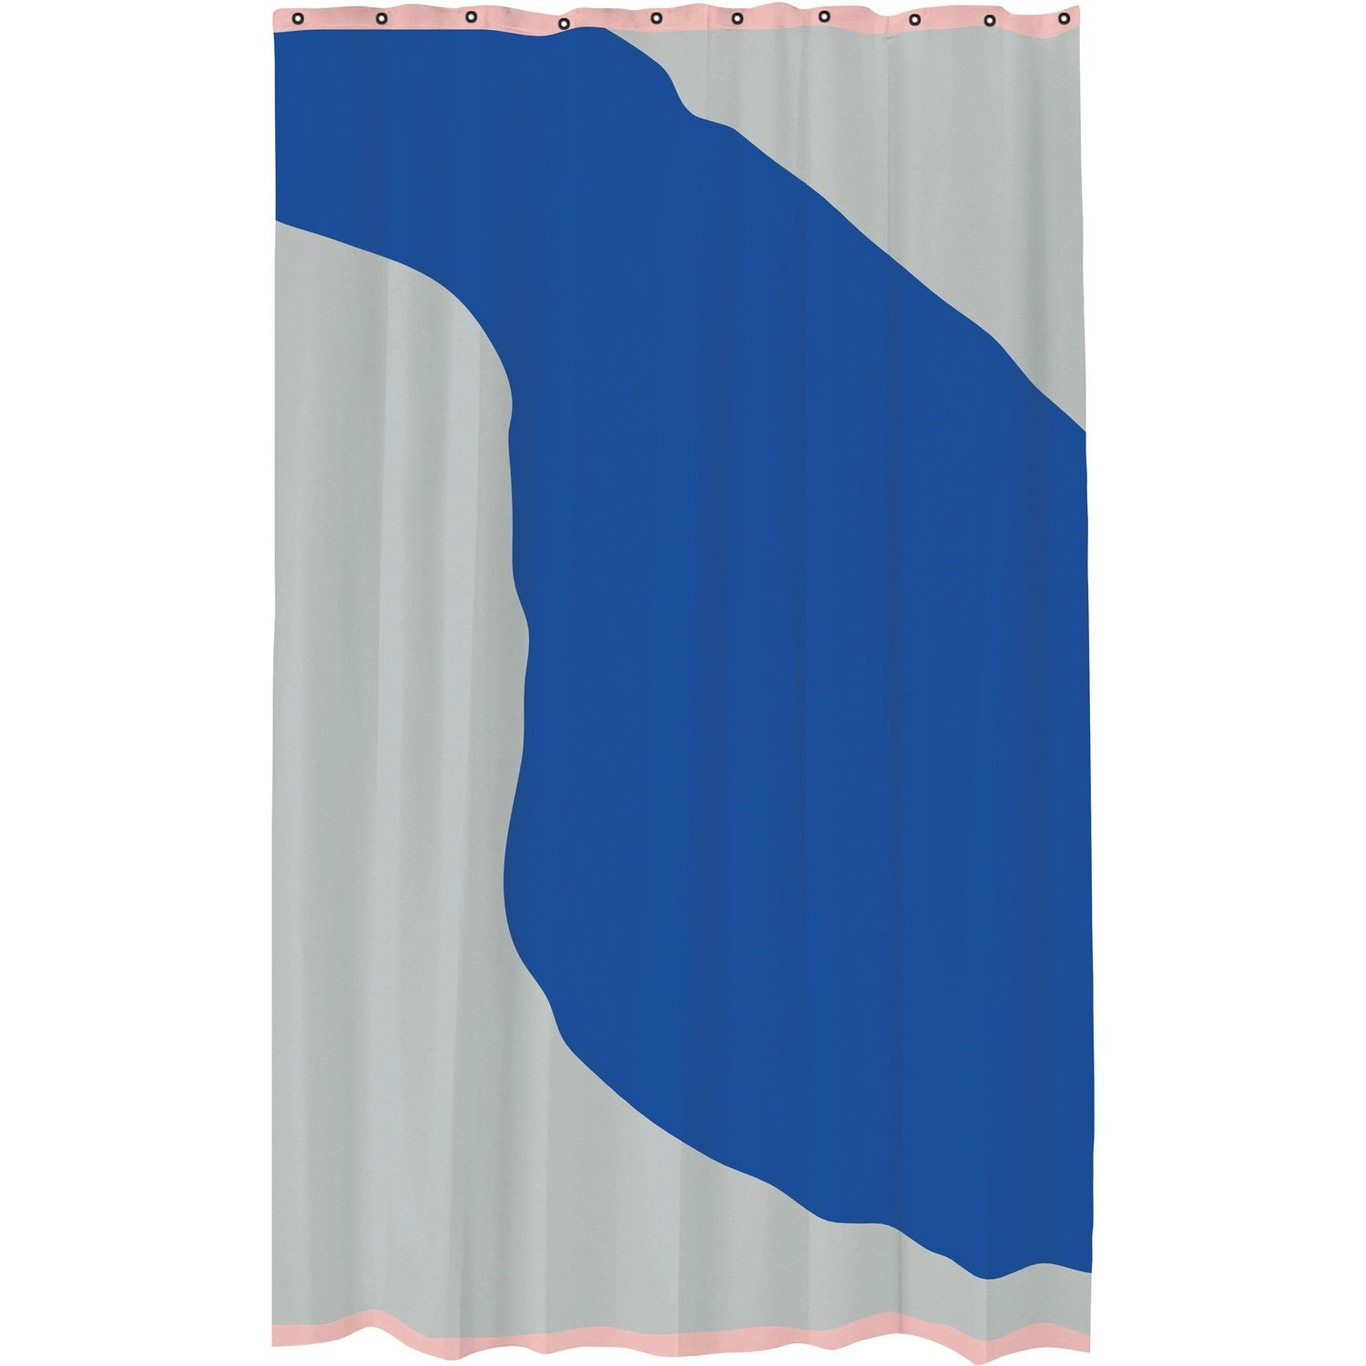 NOVA ARTE Shower Curtain 150x200 cm, Light Grey/Cobalt